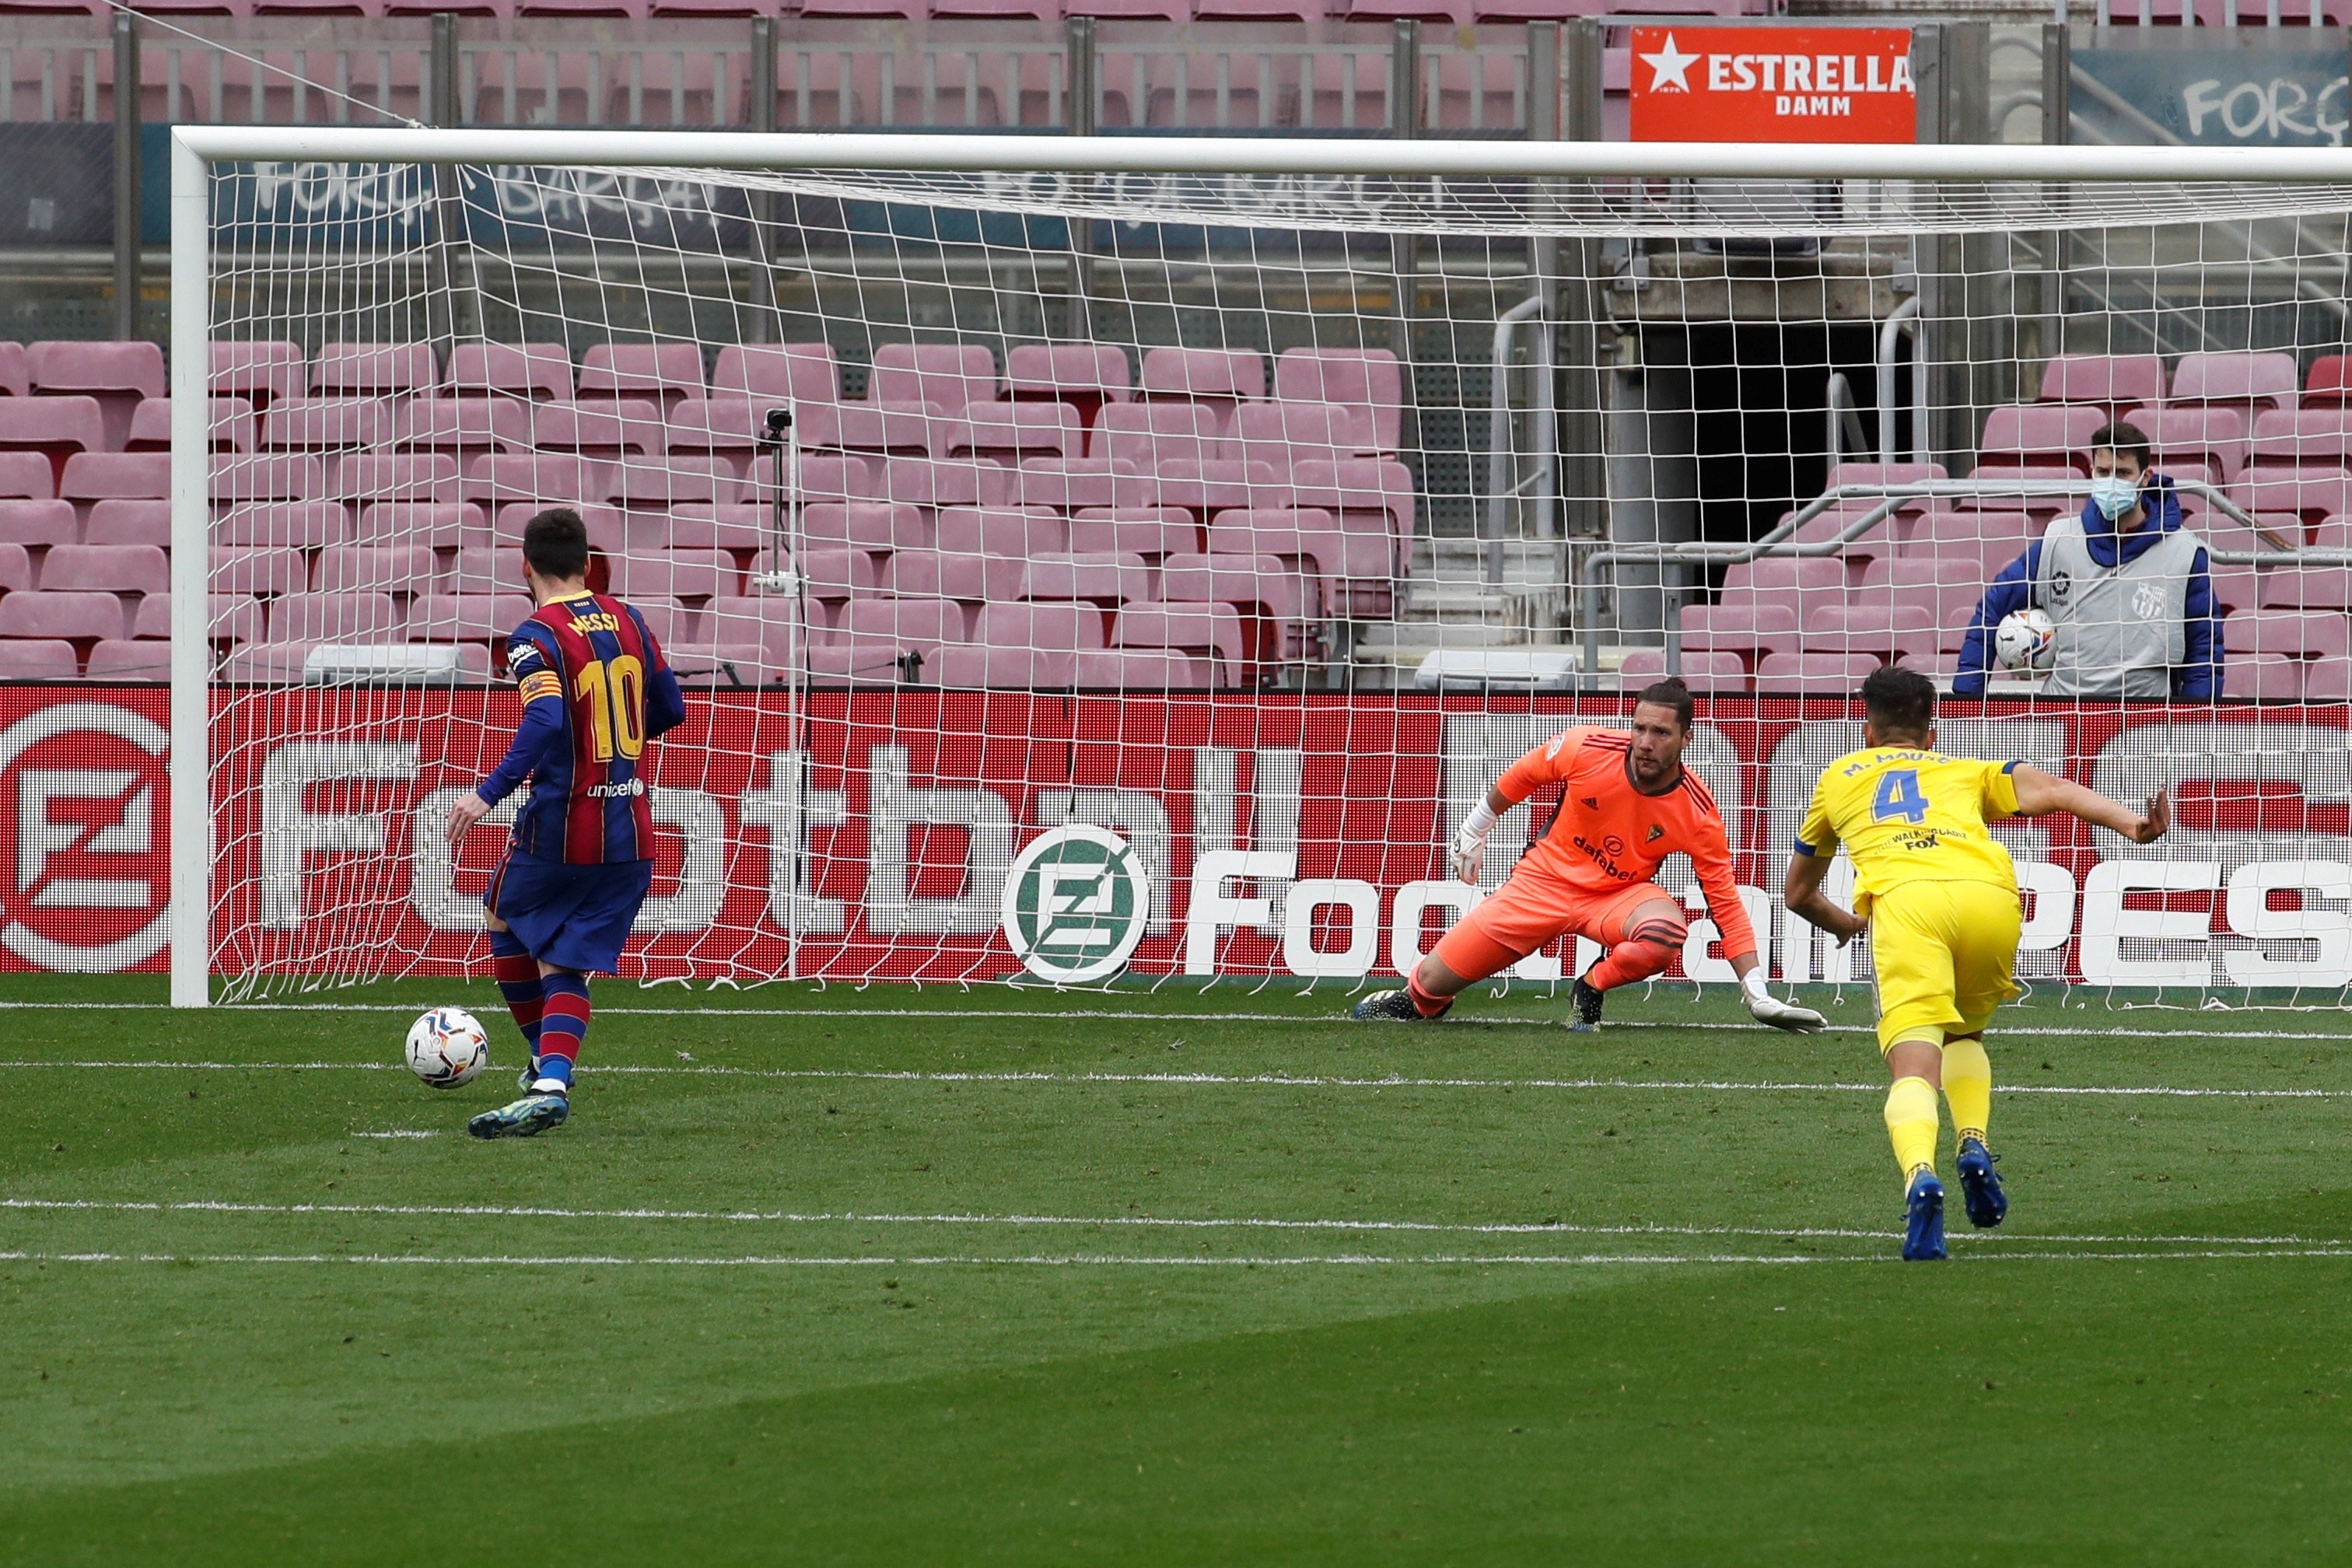 Lenglet desil·lusiona un limitat Barça que empata contra el Cadis (1-1)